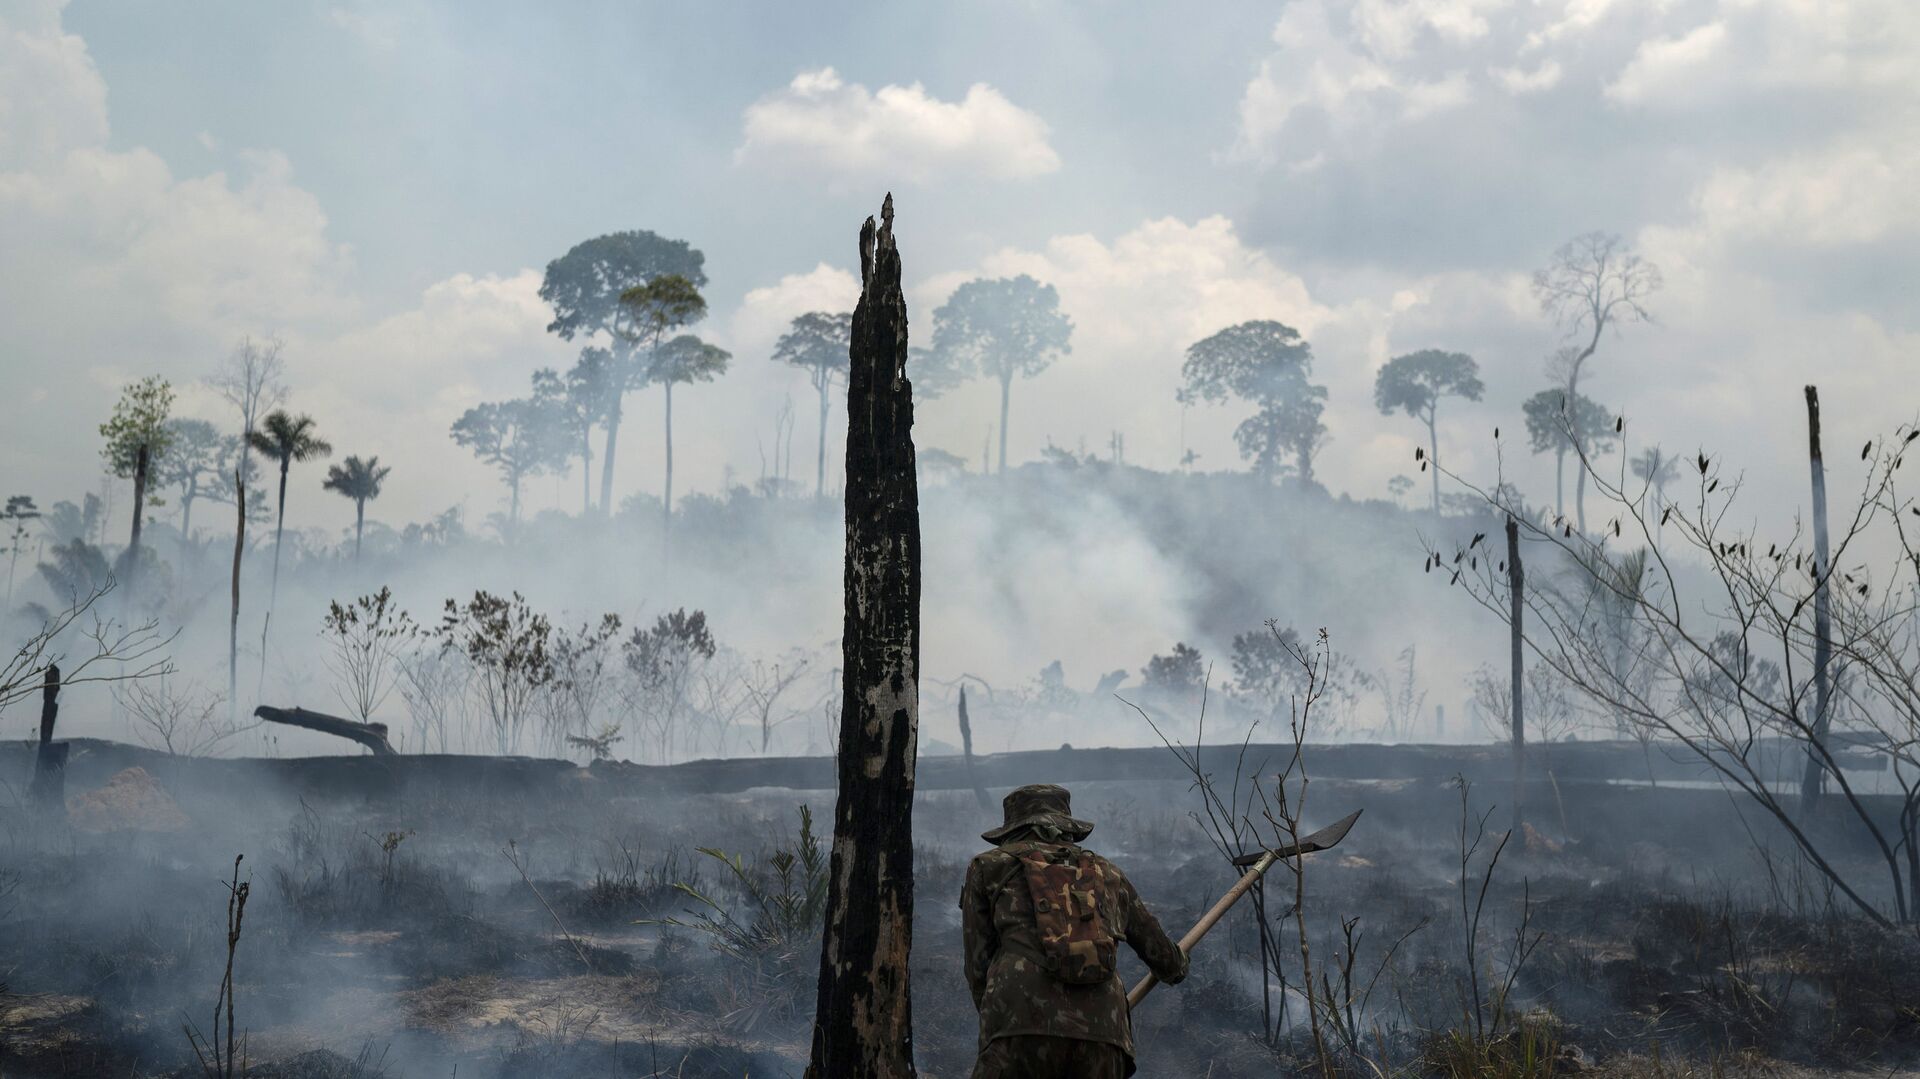 Amazonija u plamenu - najveći požari od 2010. zahvatili su ovu regiju u leto ove godine, što je podstaklo zabrinutost vezano za klimatske promene. - Sputnik Srbija, 1920, 18.04.2021